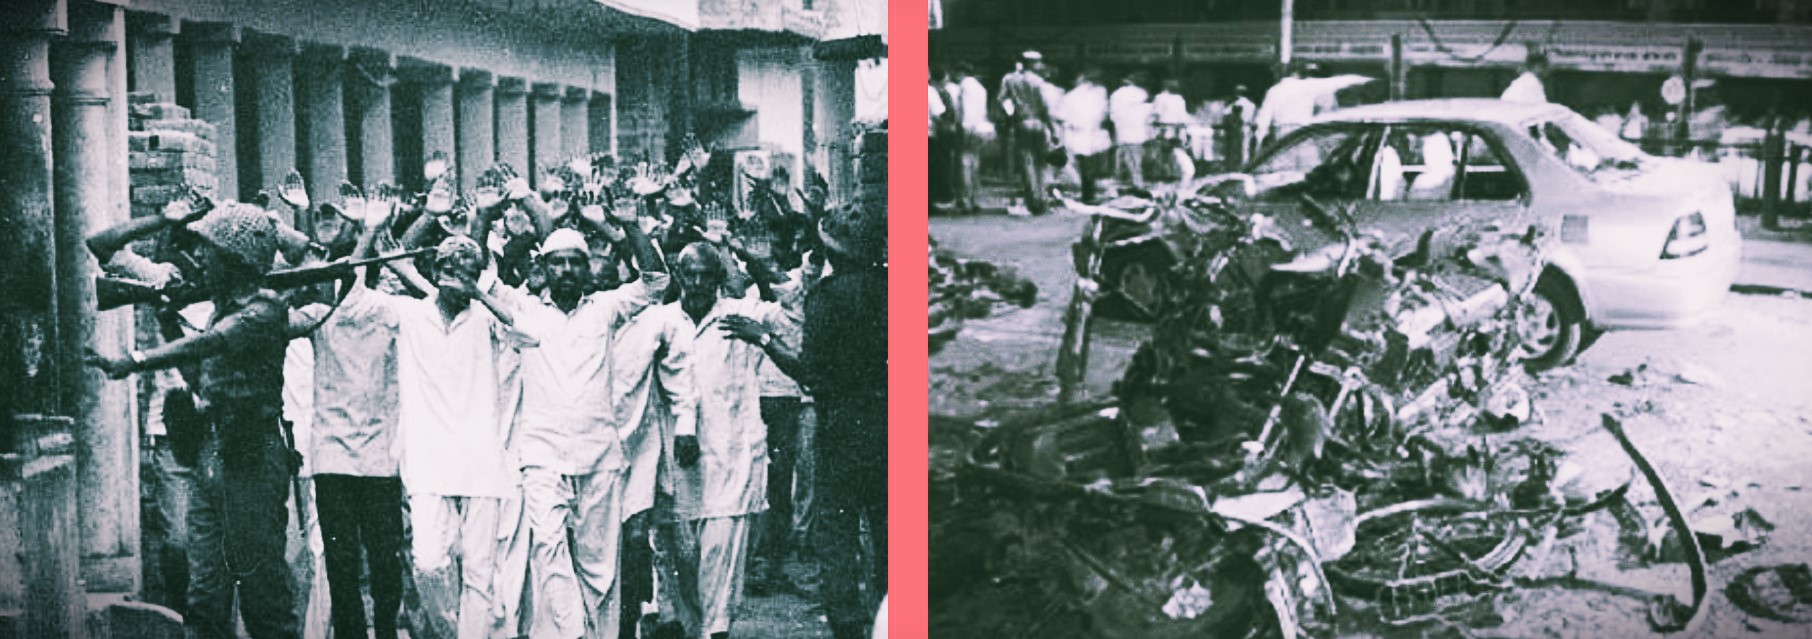 मलियाना दंगों और जयपुर विस्फोट केस में आरोपमुक्ति: दो फैसले और दो तरह की राजनीतिक प्रतिक्रिया